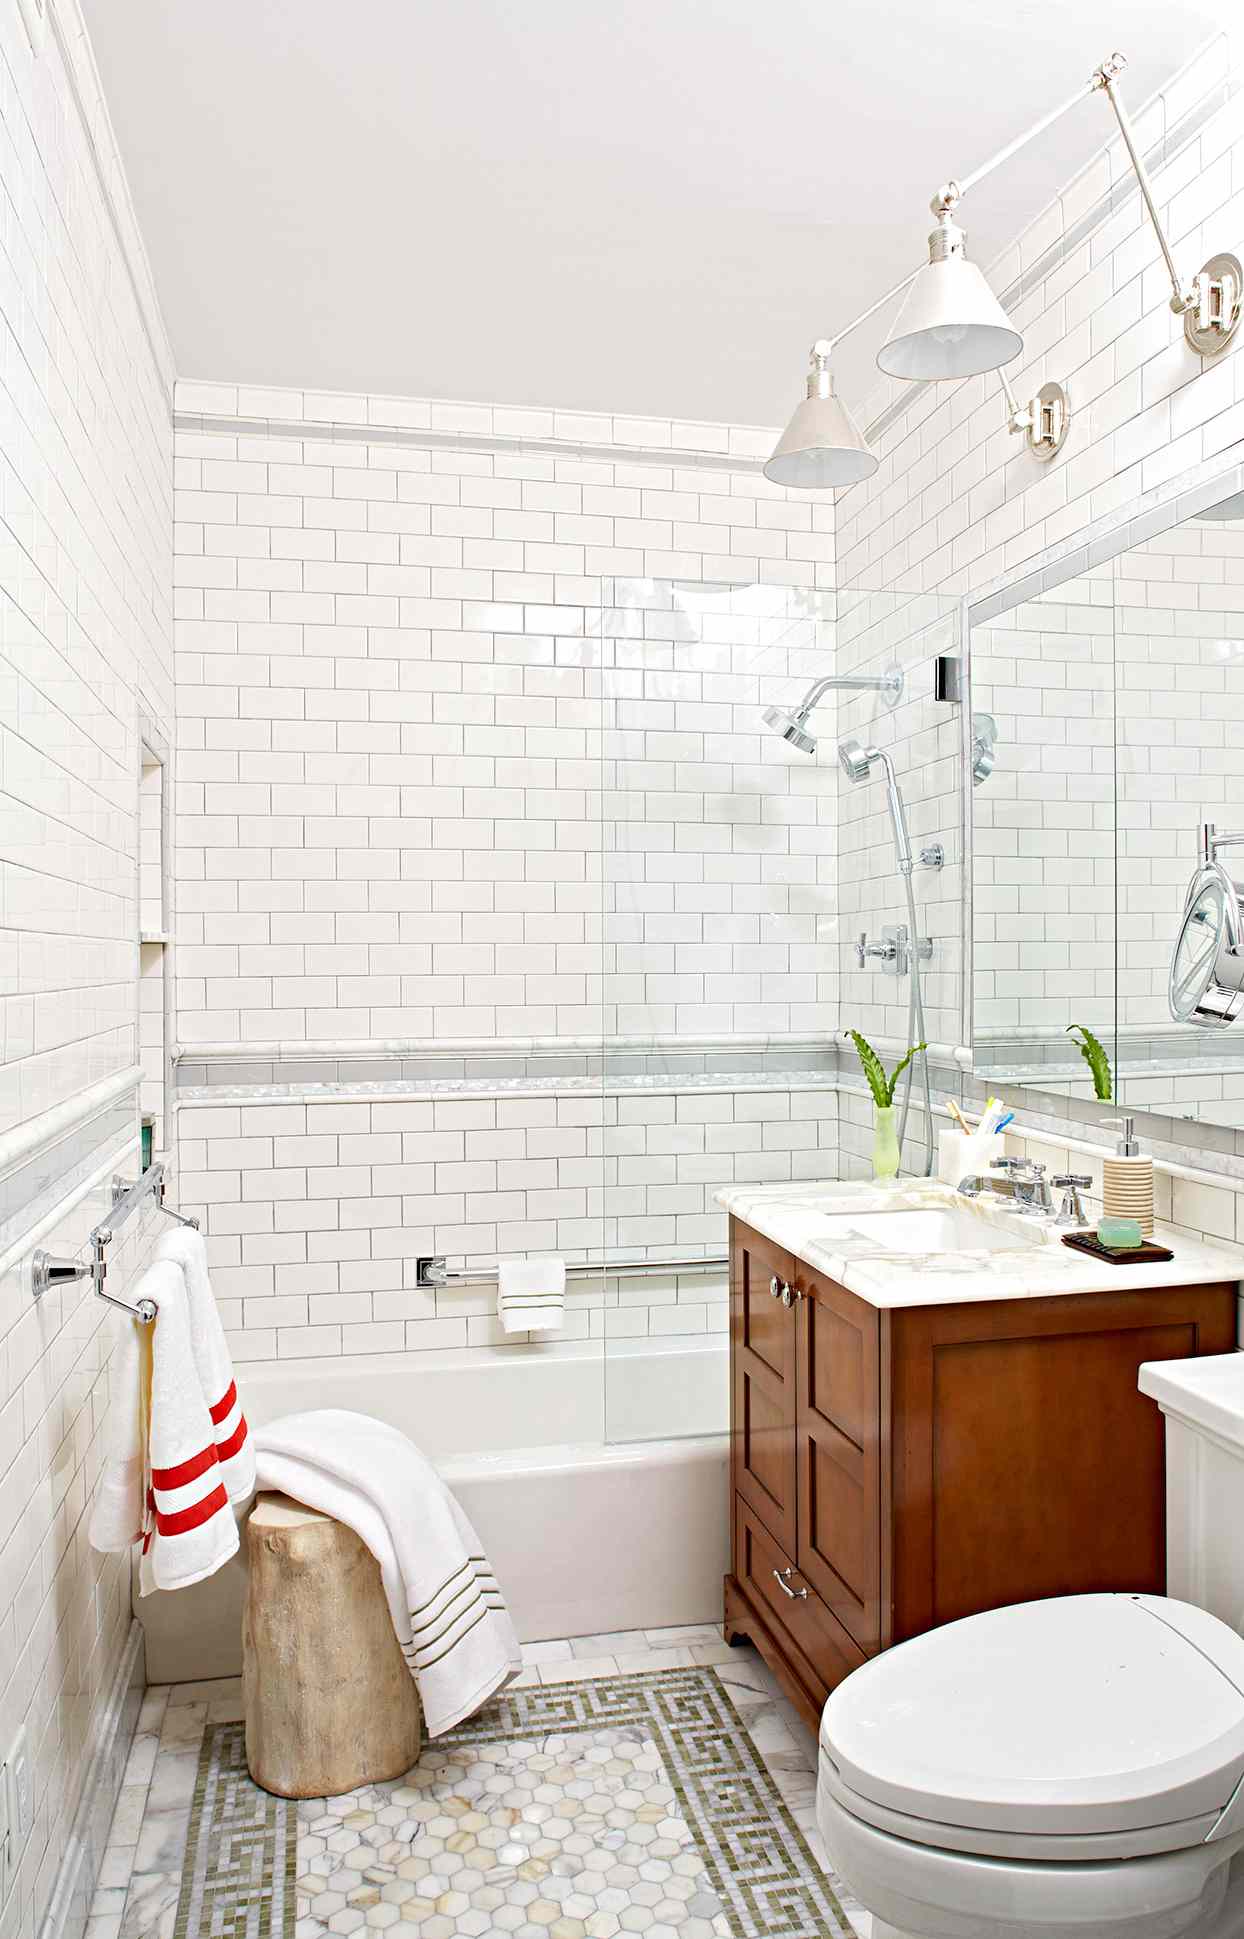 Tile A Shower Enclosure Or Tub Surround, Shower Surround Ideas Tile